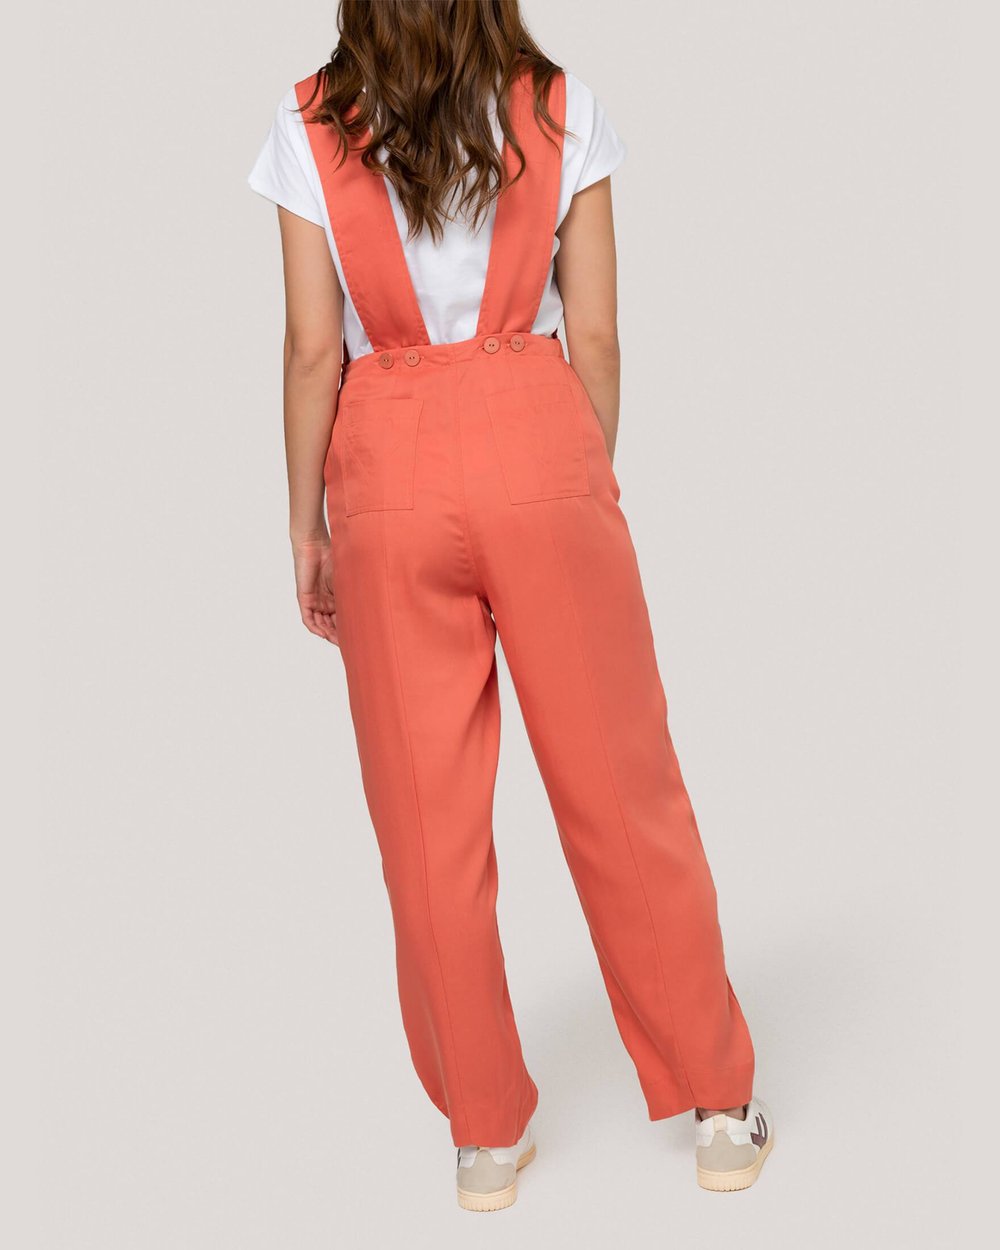 Damen Overall Farbe Orange - MOHITO - 9660V-23X